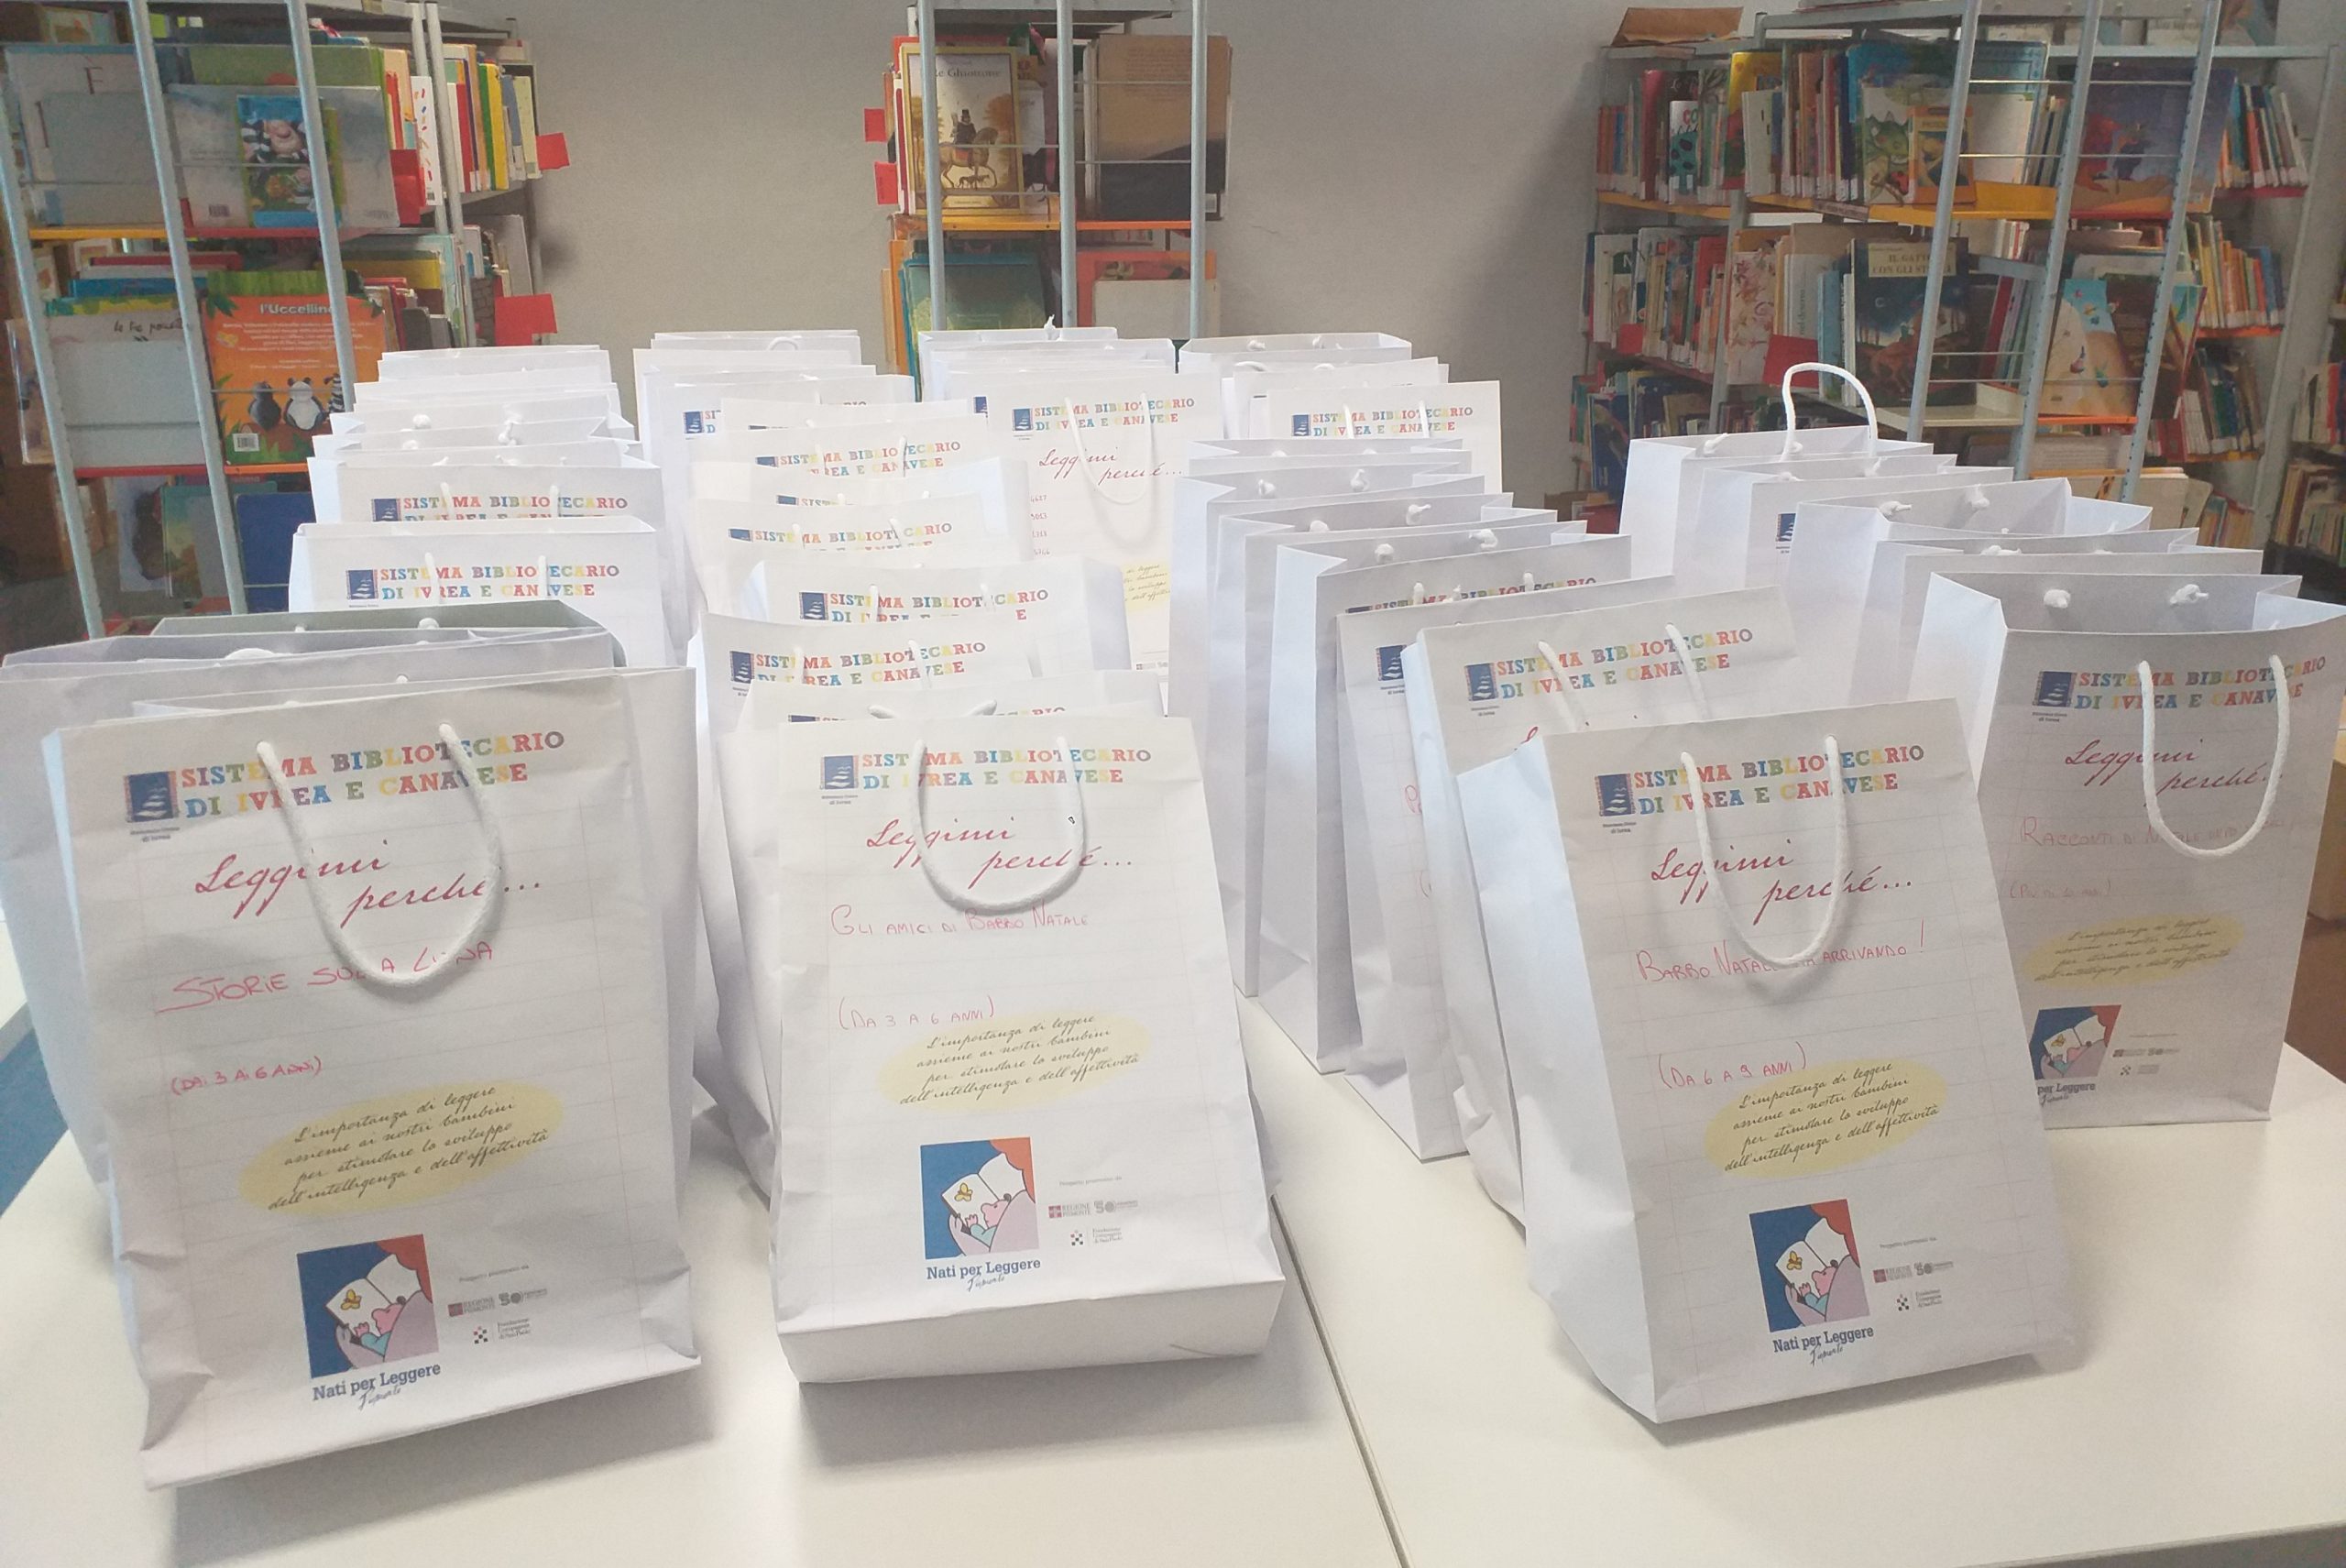 La Biblioteca di Ivrea lancia l’iniziativa “Leggimi perché”: proposte di lettura per bambini pronte da ritirare e portare a casa